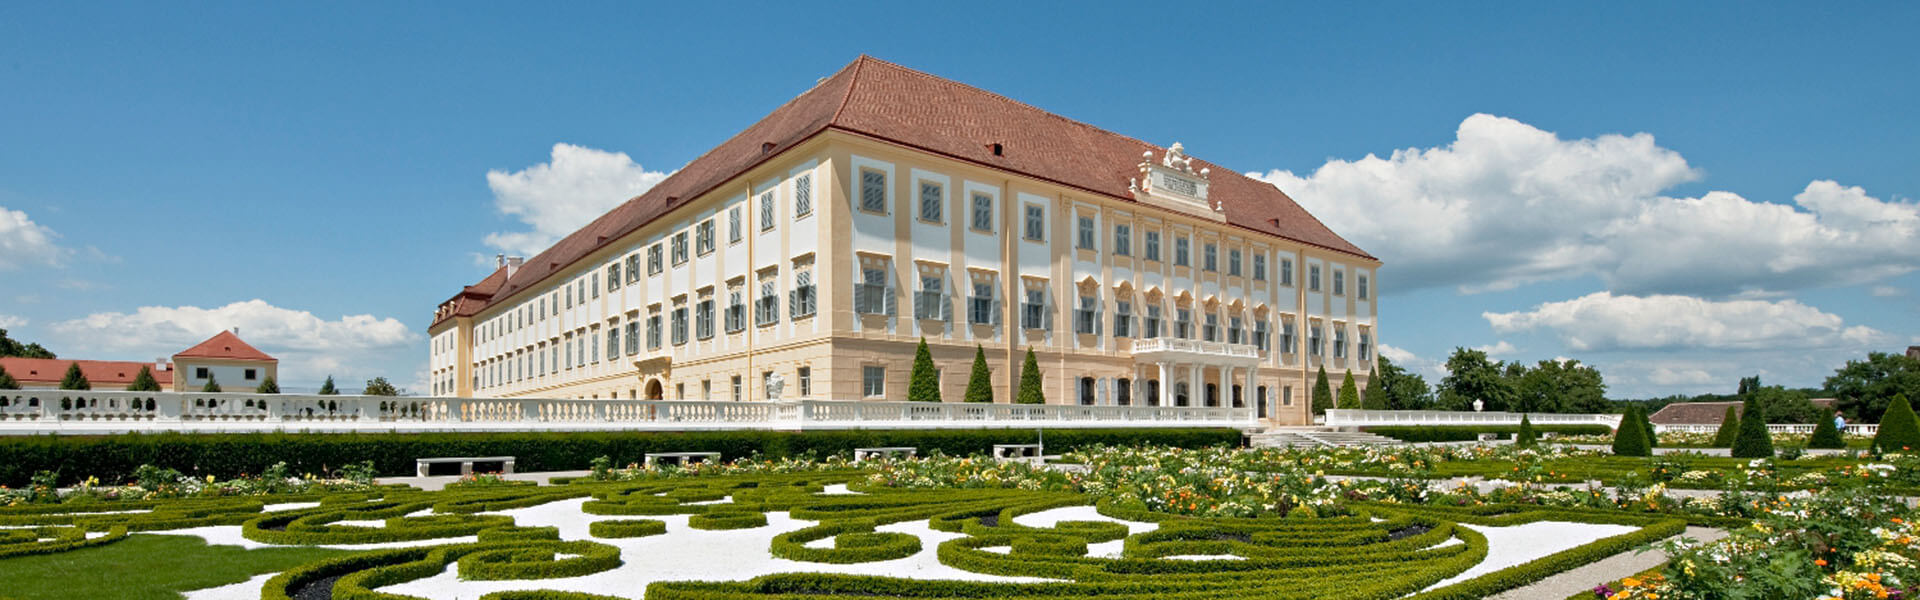 Schloss Hof, Landgarten & Lustschloss